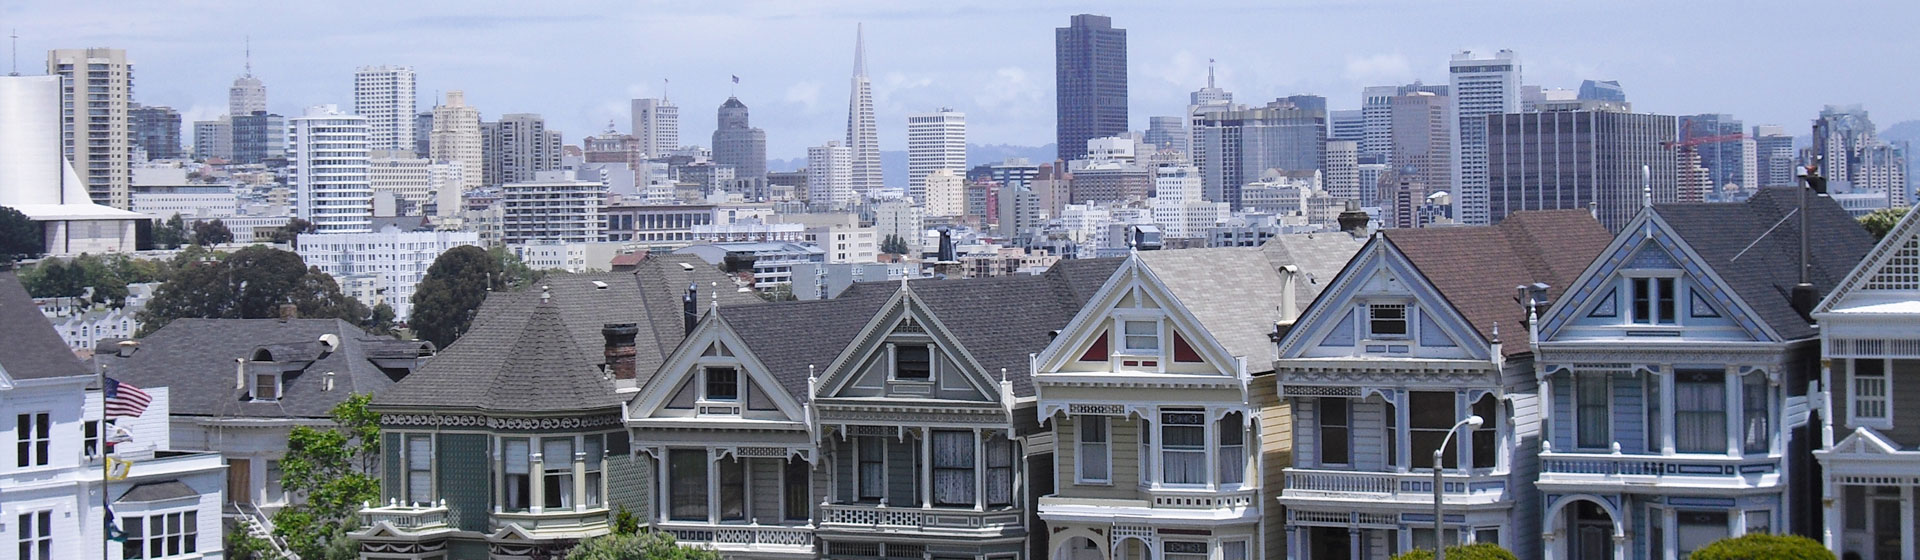 Färgglada hus i San Francisco, the Painted Ladies.